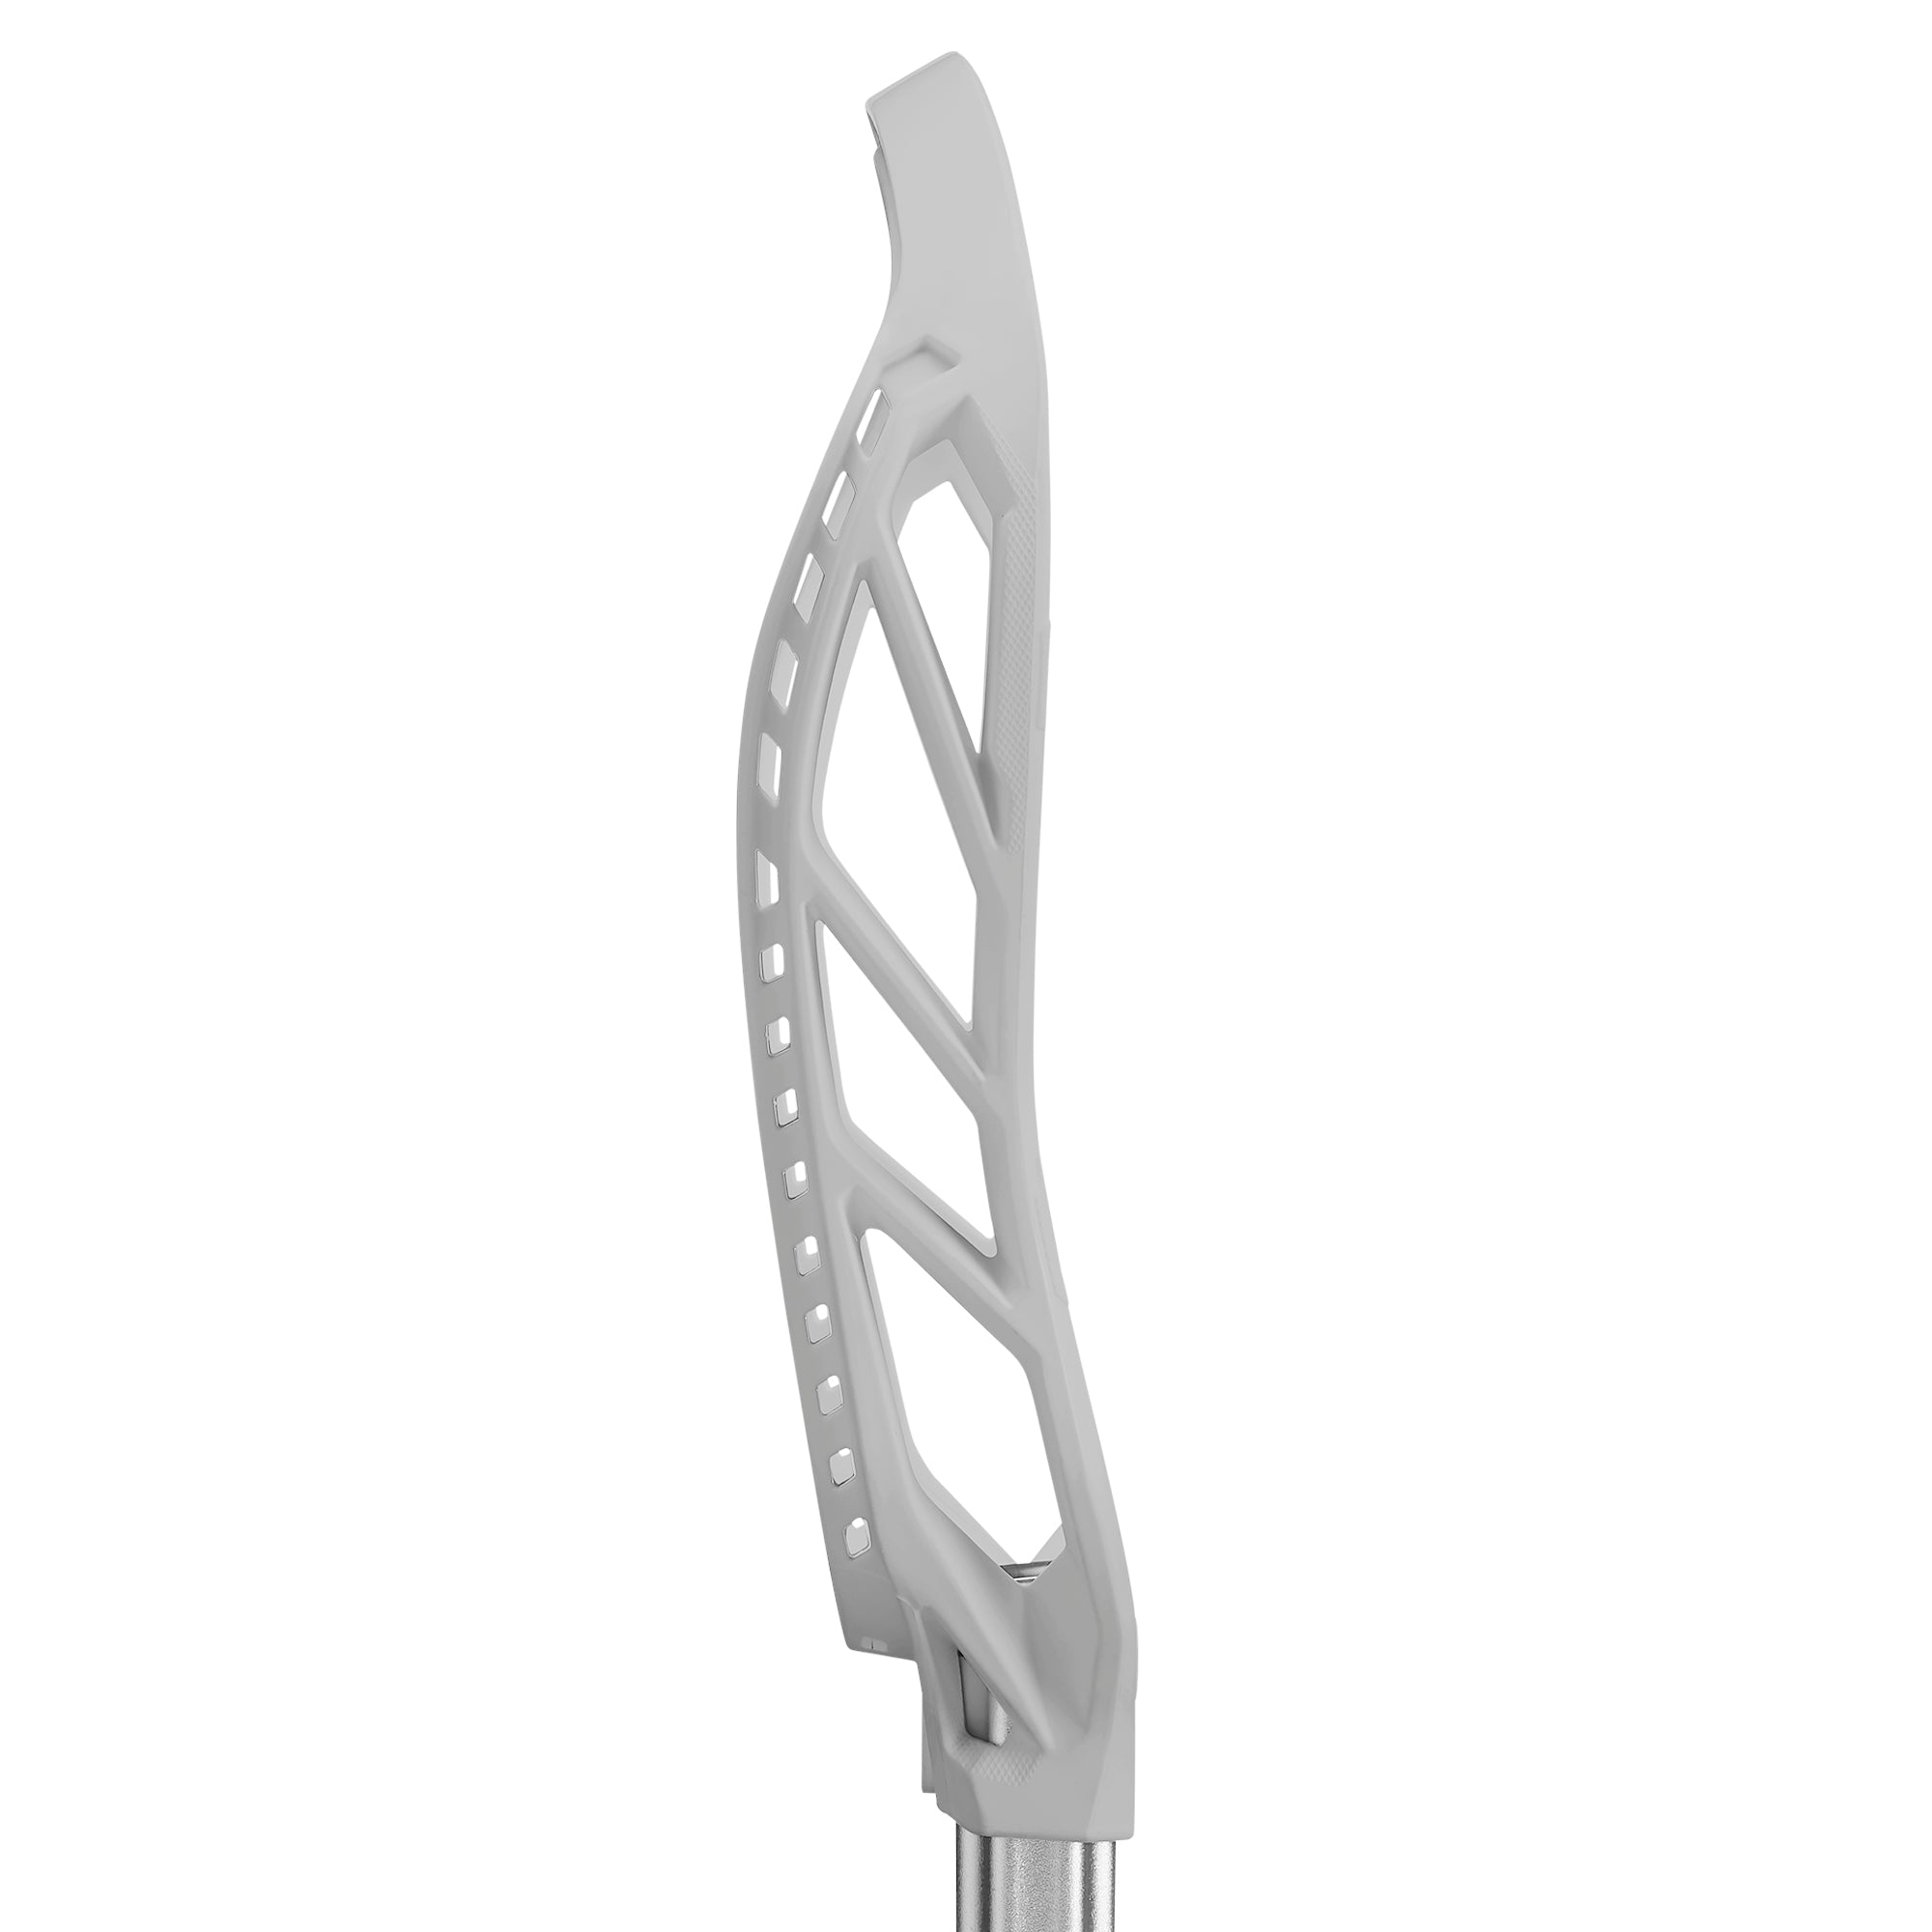 STX Hammer 1K Lacrosse Head